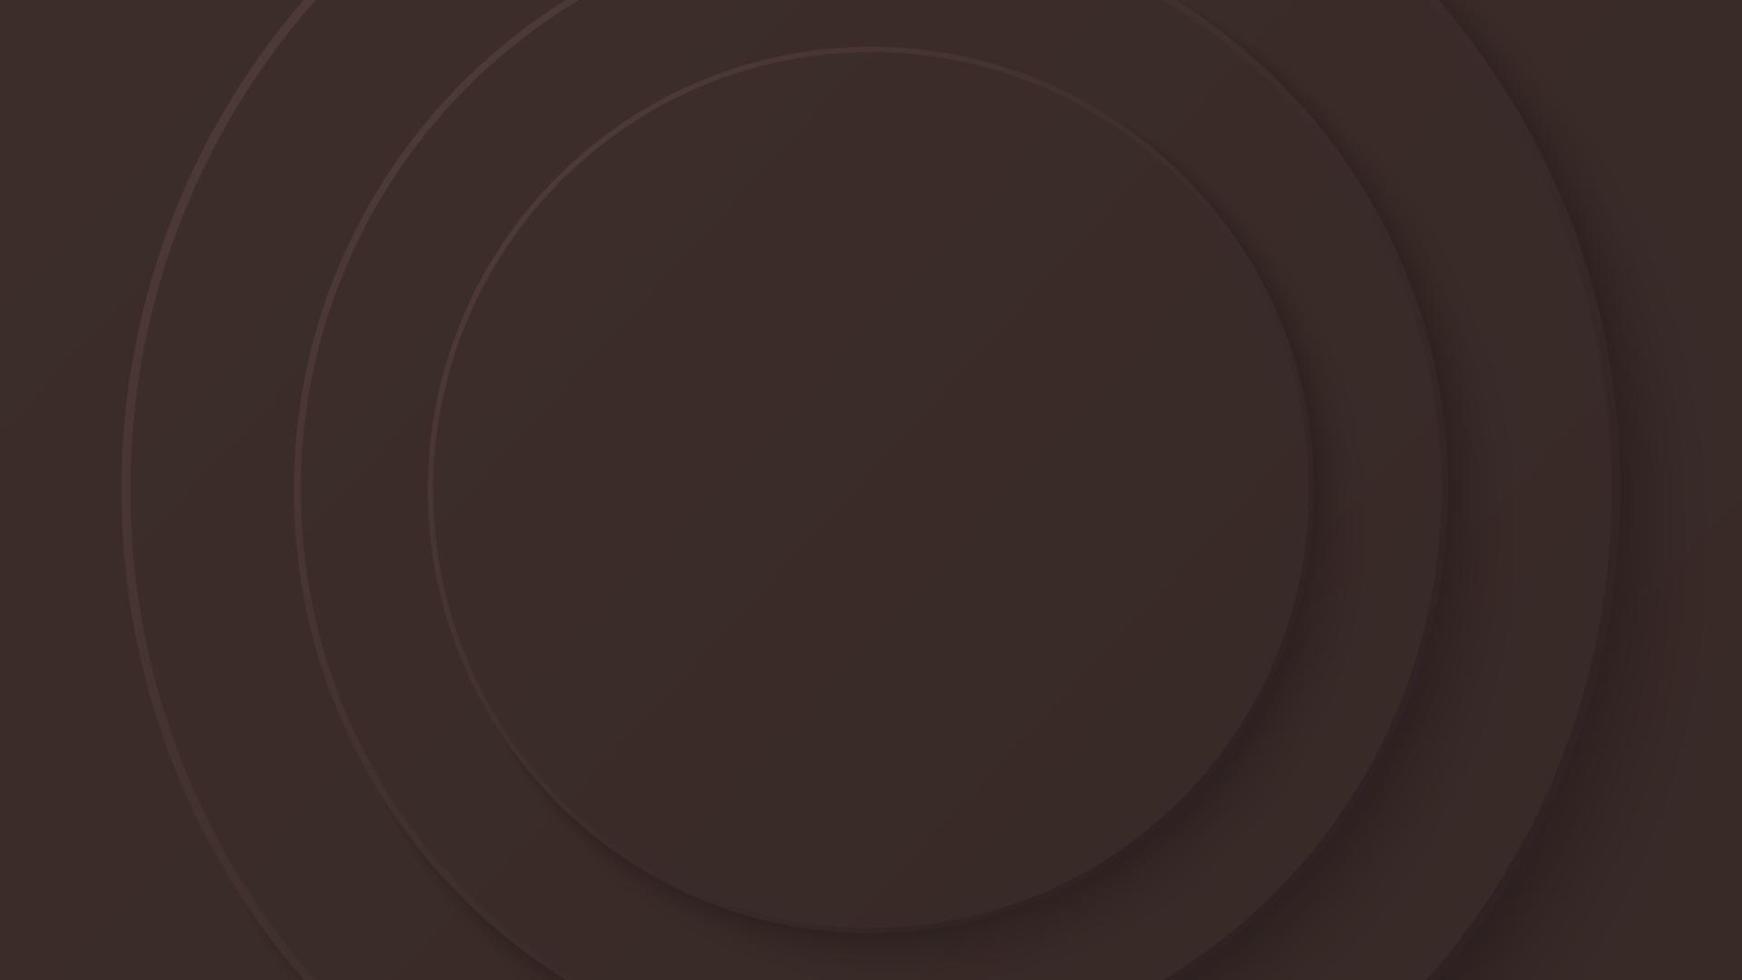 abstrakt papper cirkel mörk choklad brun Färg trender bakgrund design. vektor illustration. eps10